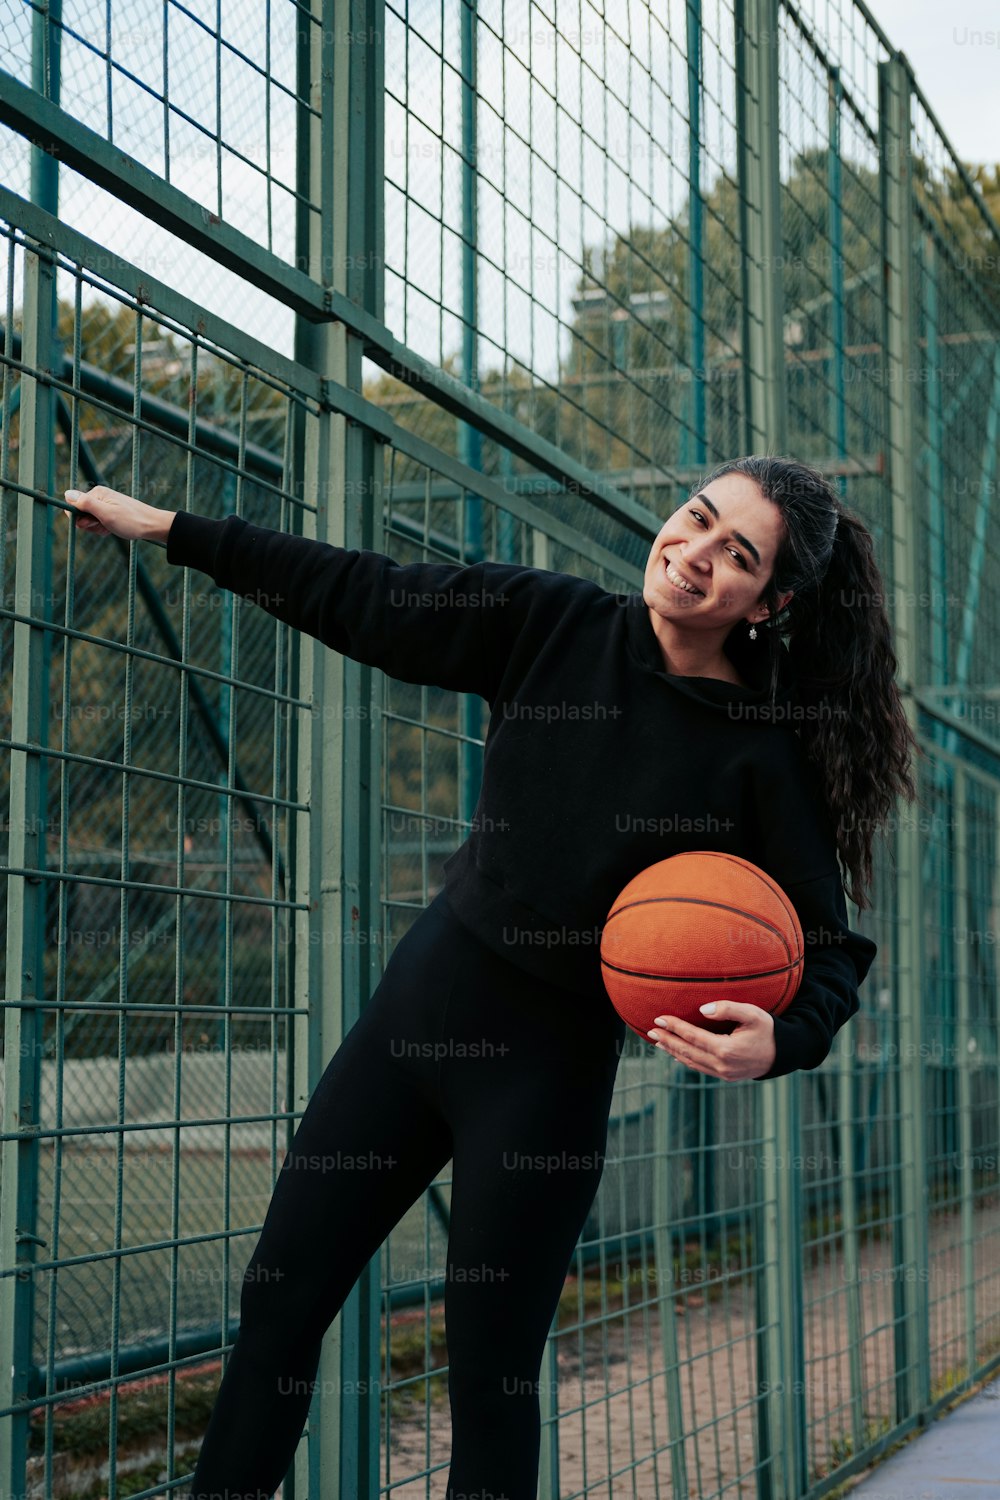 フェンスの横に立つバスケットボールを持つ女性